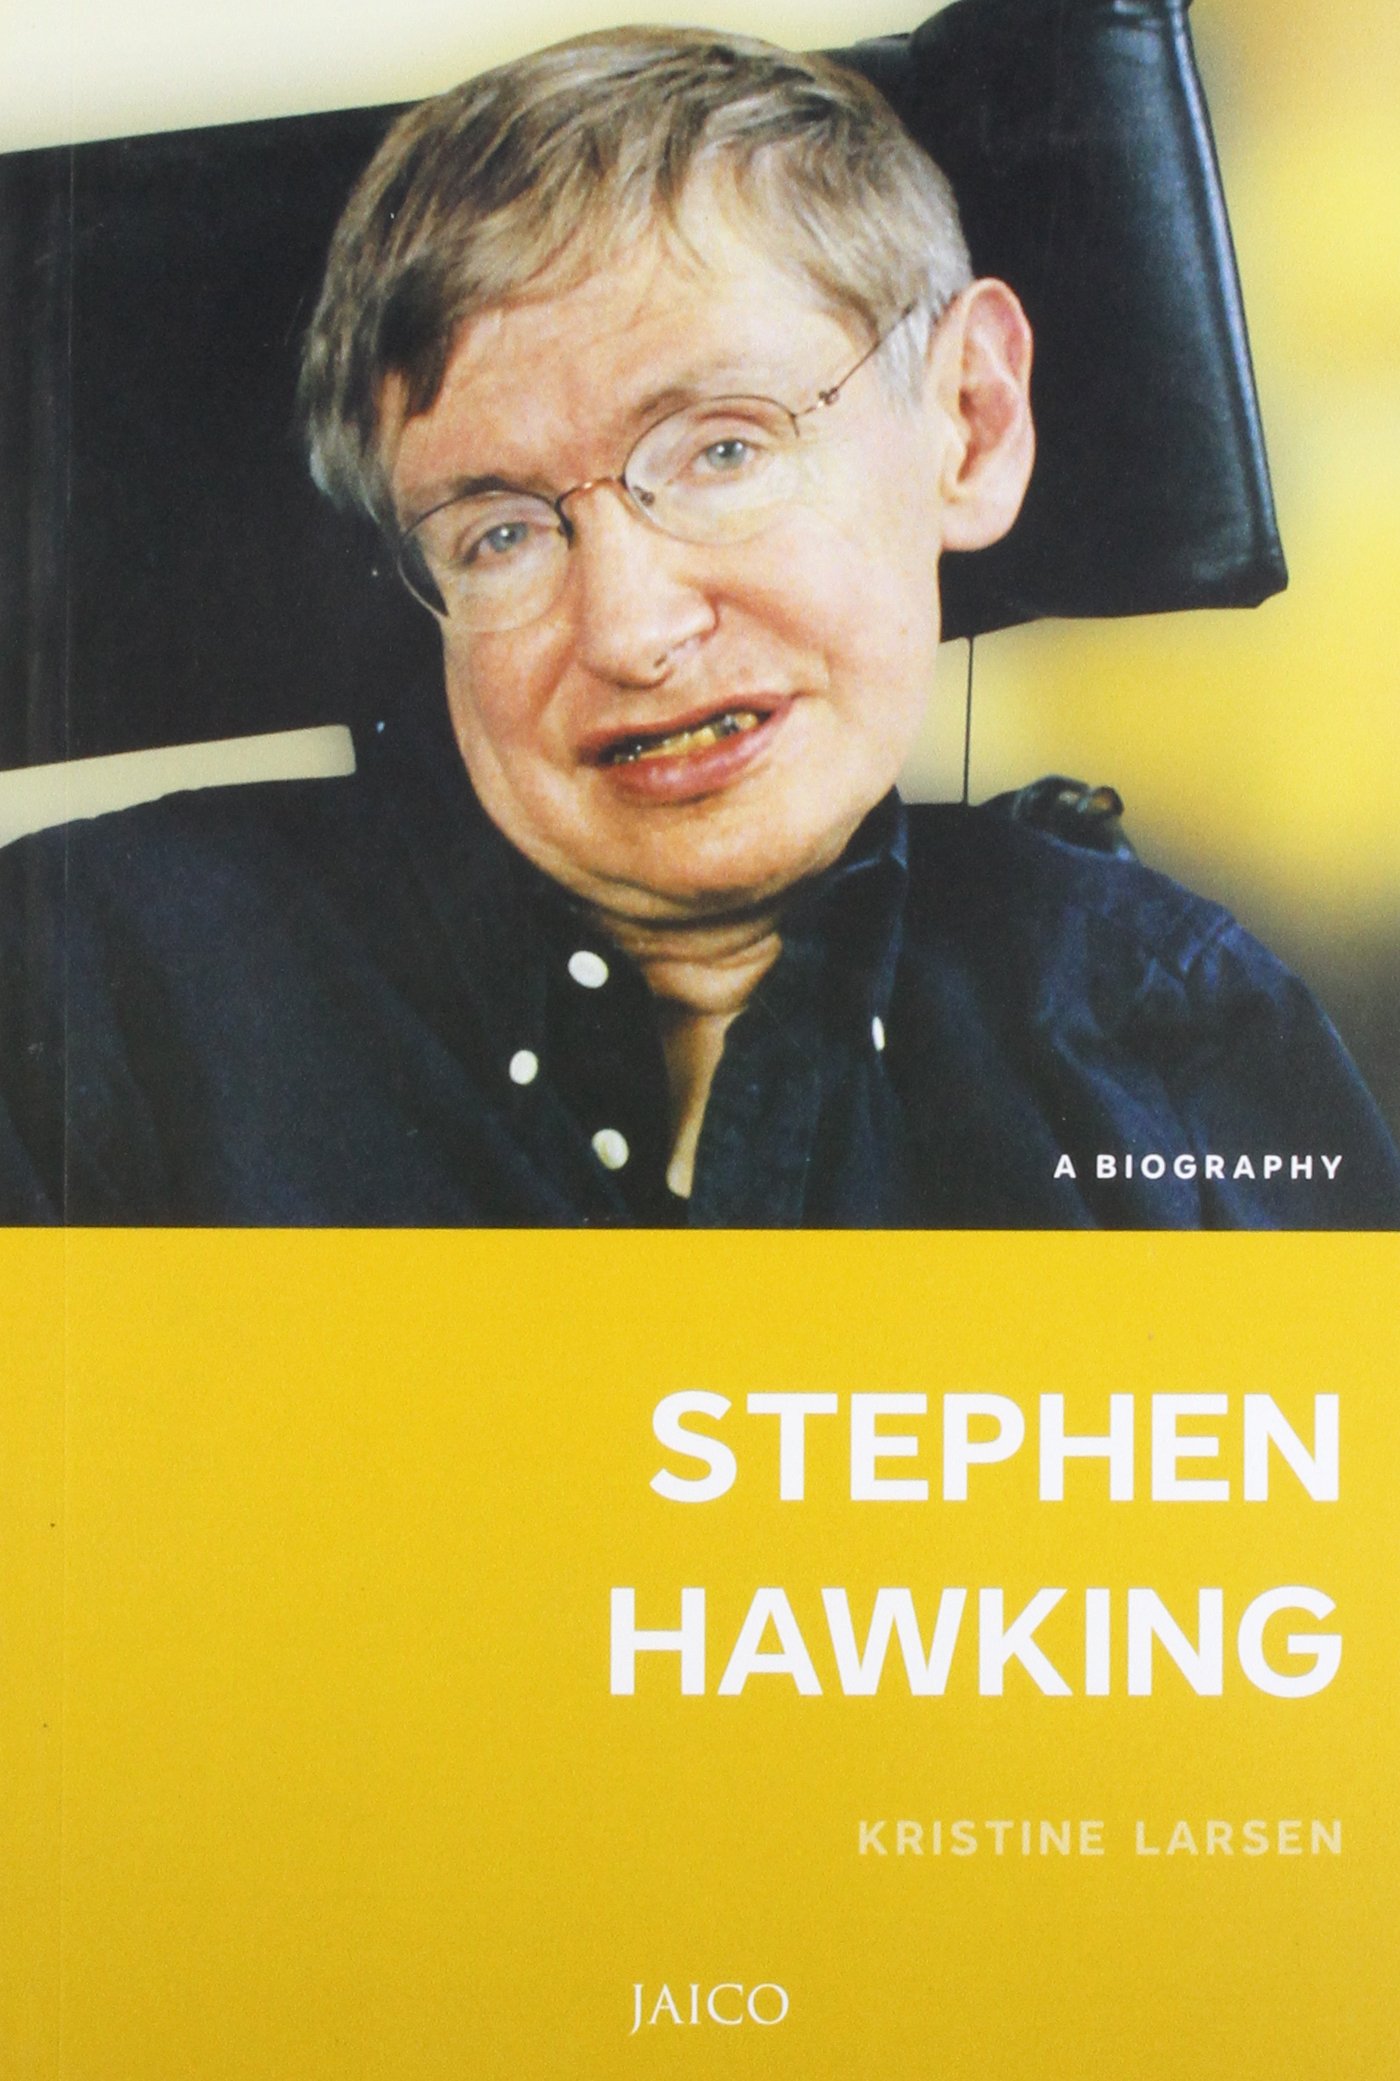 Stephen Hawking Biography  PDF  Stephen Hawking  Science